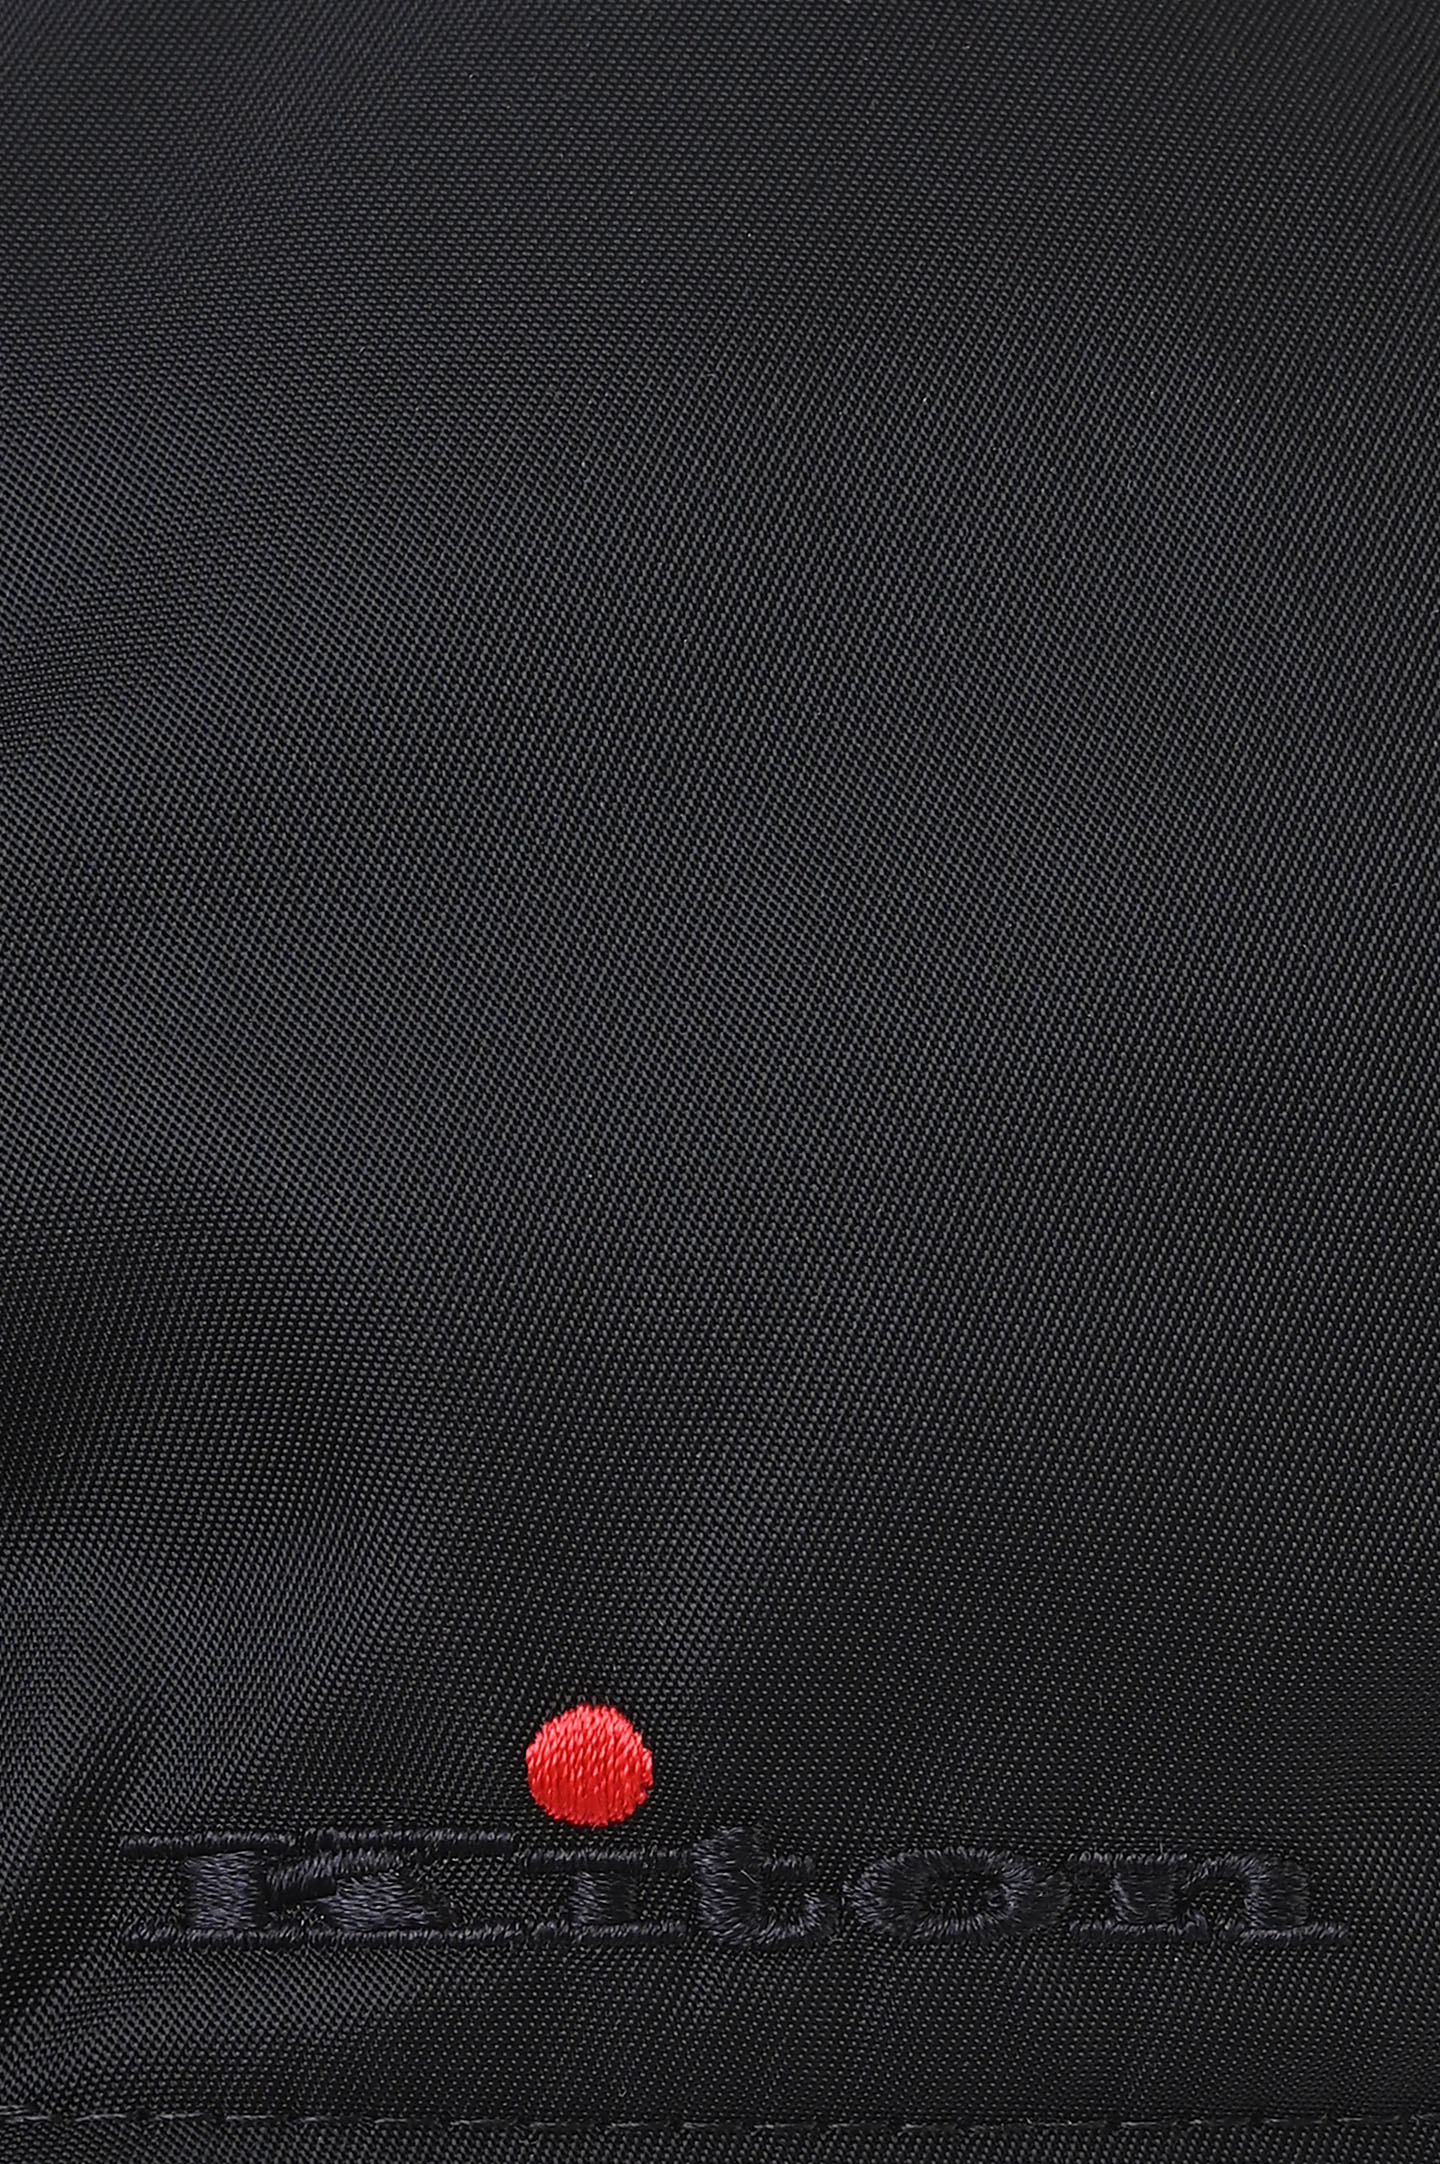 Бейсболка с логотипом KITON UCAPP57K0716D0, цвет: Черный, Мужской